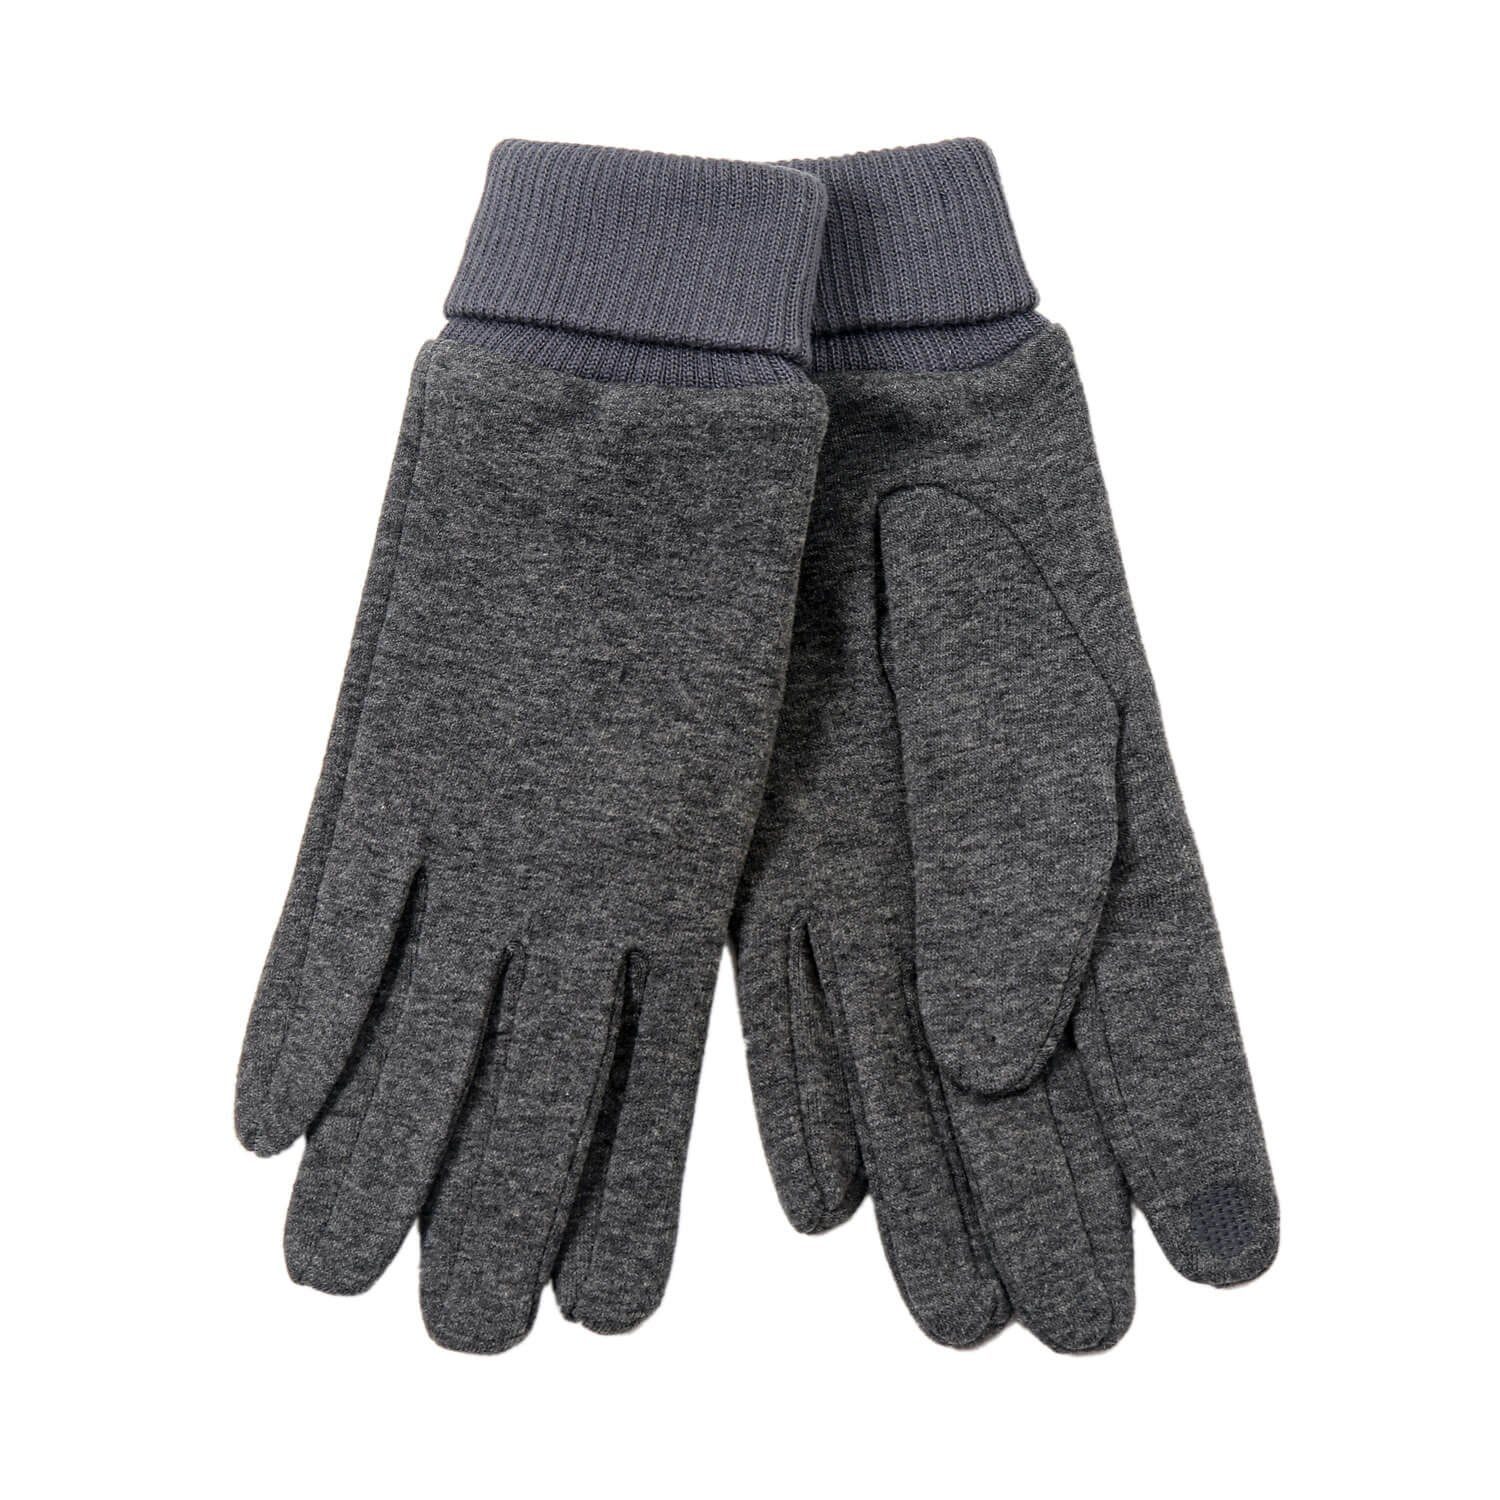 Leoberg Strickmütze Herren Handschuhe Winterhandschuhe in verschiedenen Farben und Designs Grau-252010